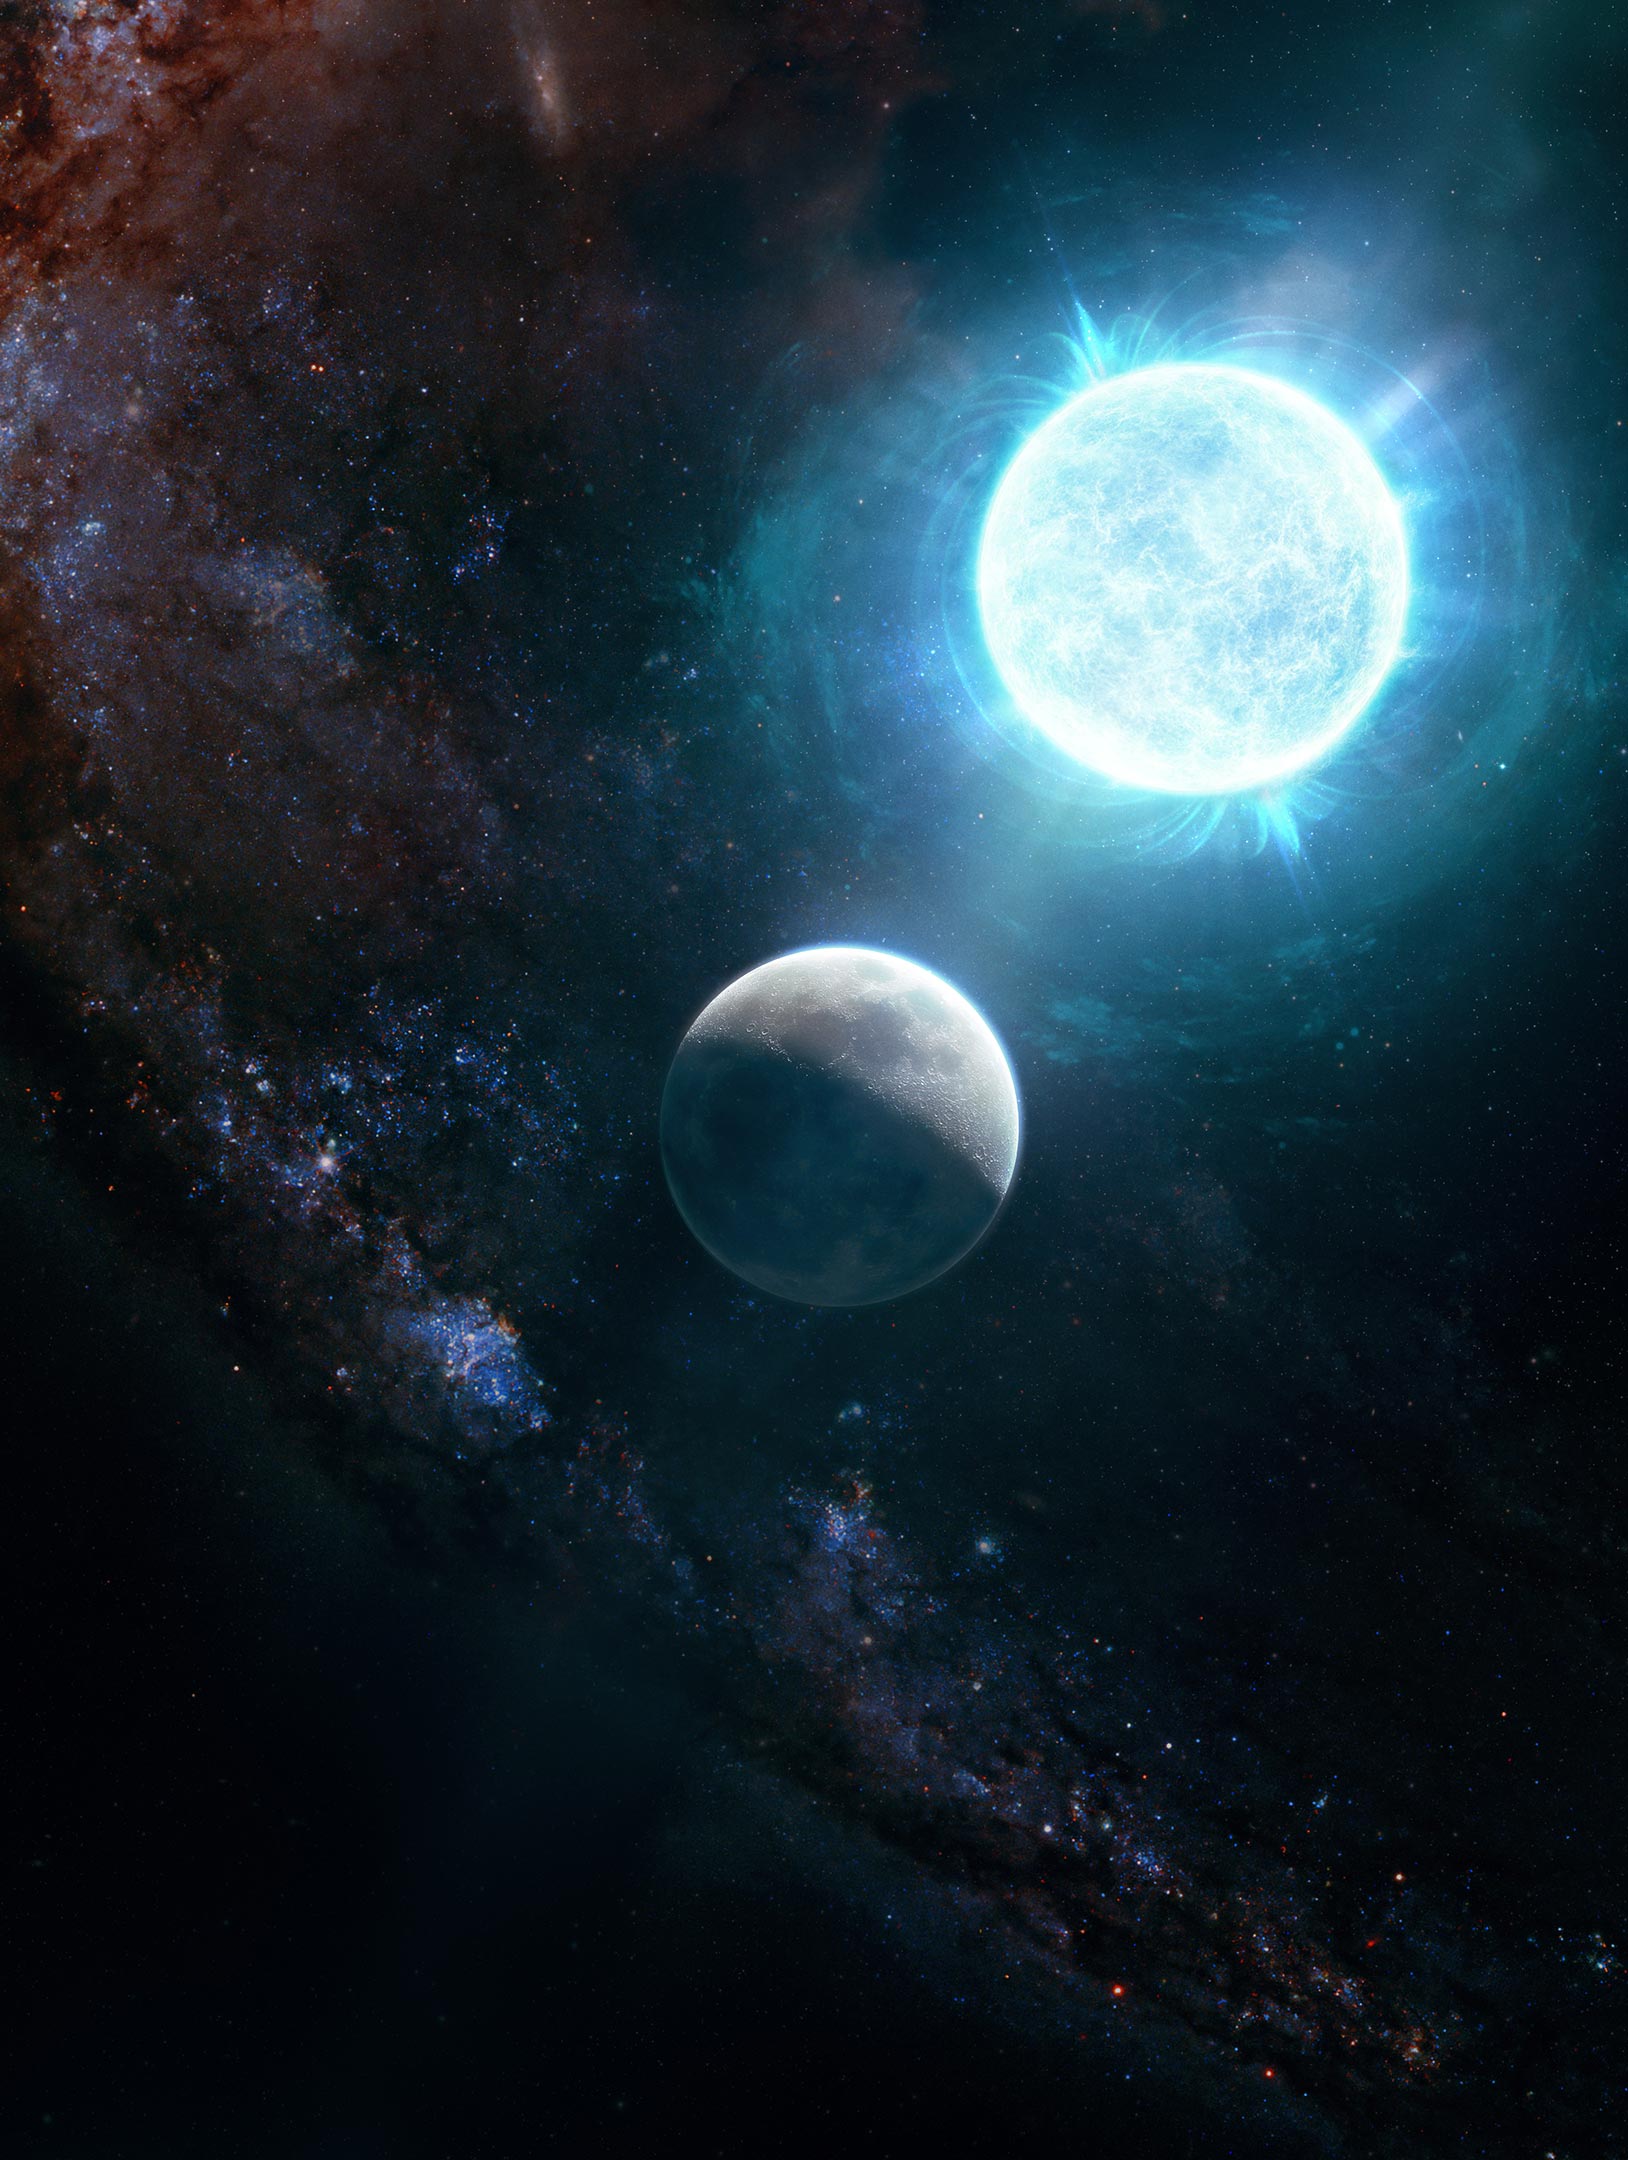 Sao lùn trắng kỳ dị nhỏ như mặt trăng nặng hơn mặt trời